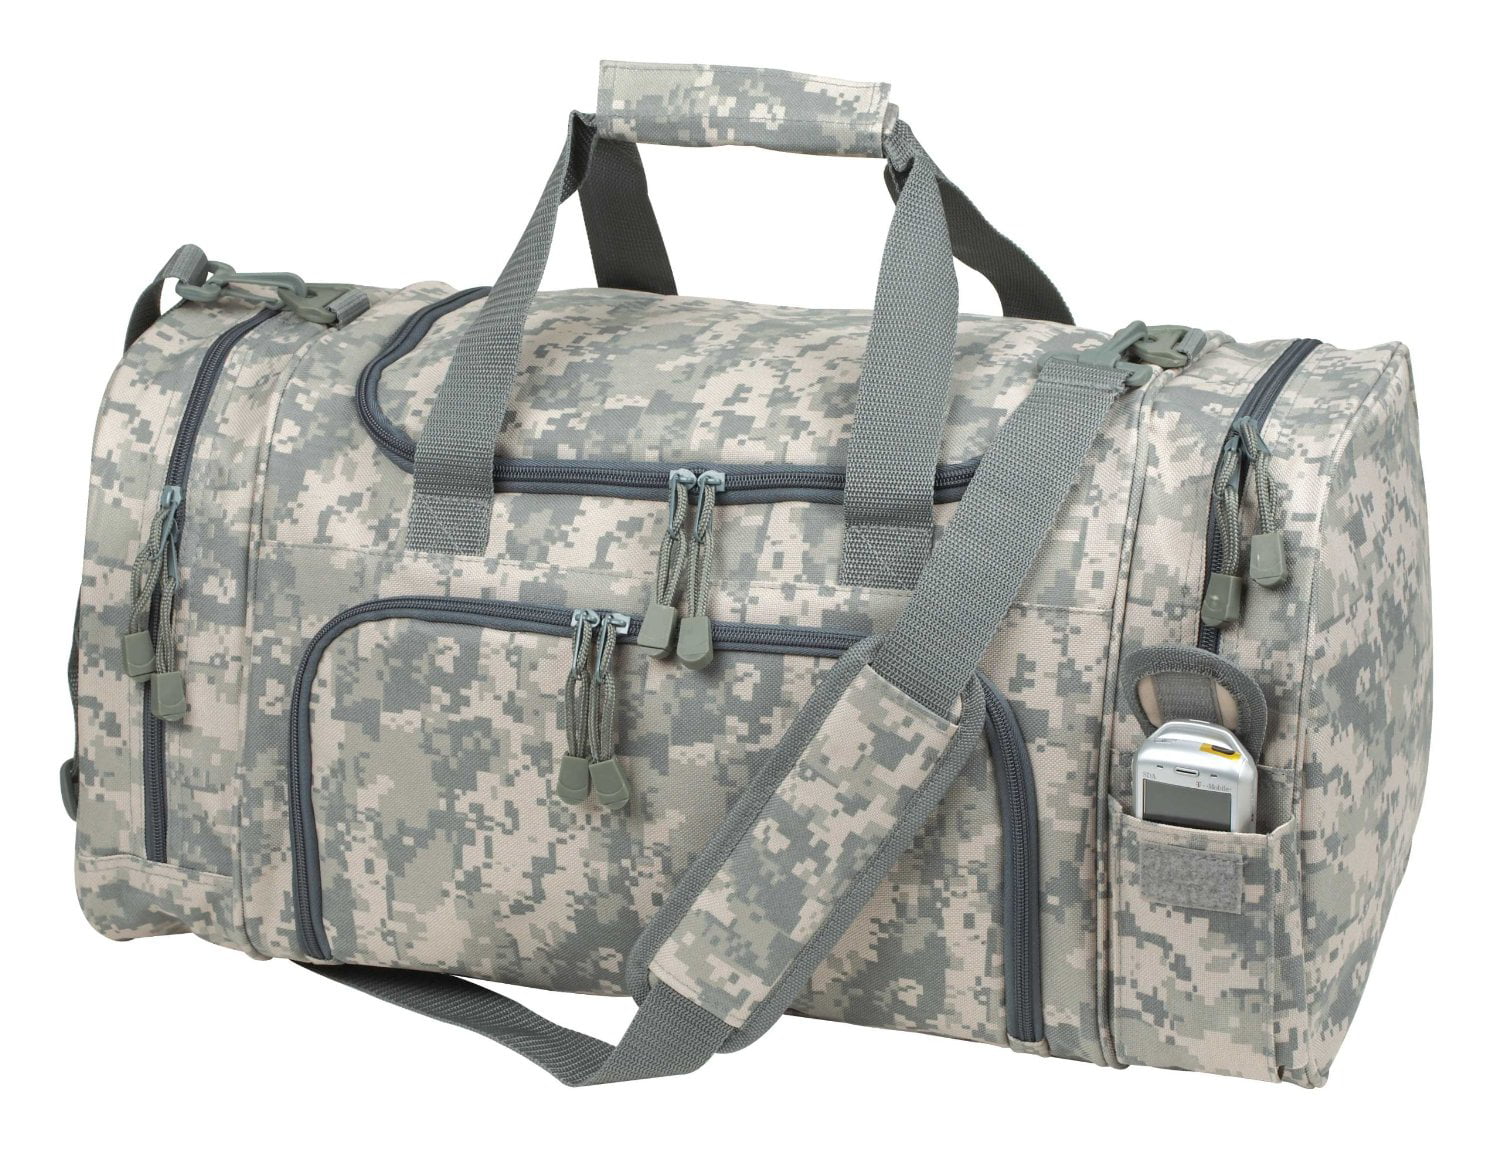 Travel ACU Duffel Bag Camouflage Duffle Gym Bag, Luggage